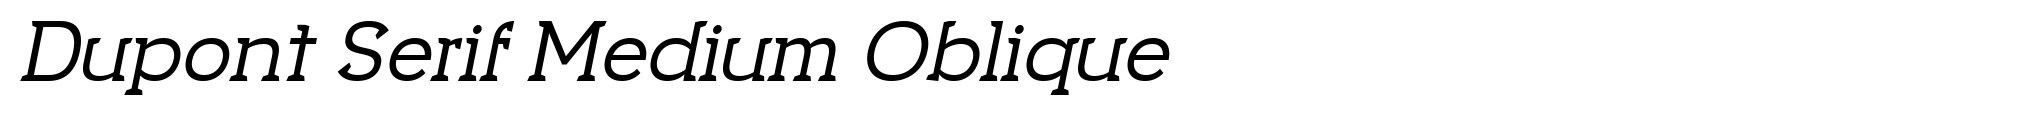 Dupont Serif Medium Oblique image